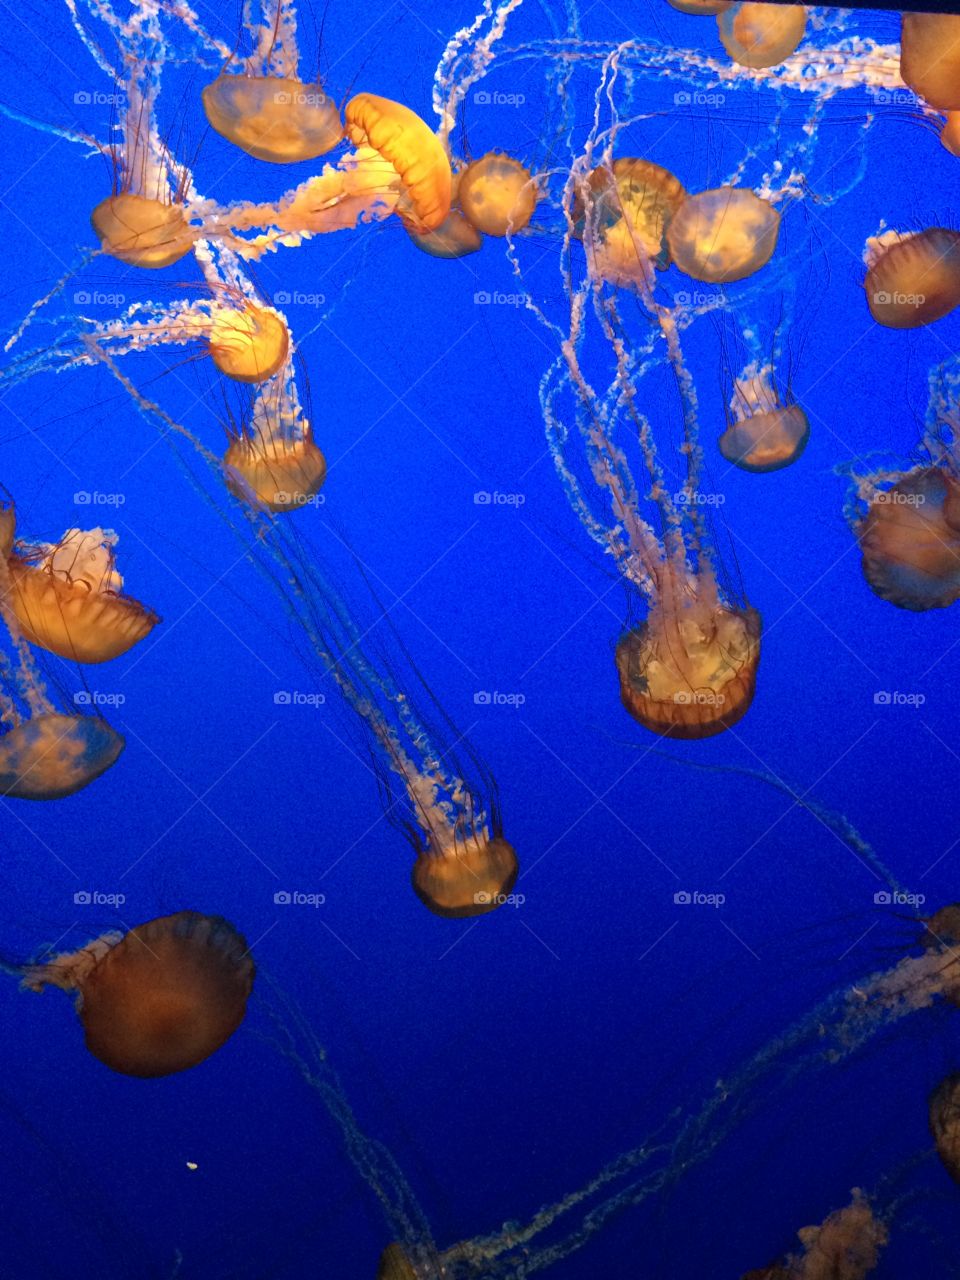 Jellyfish. Jellyfish photo in Monterey Bay Aquarium, CA